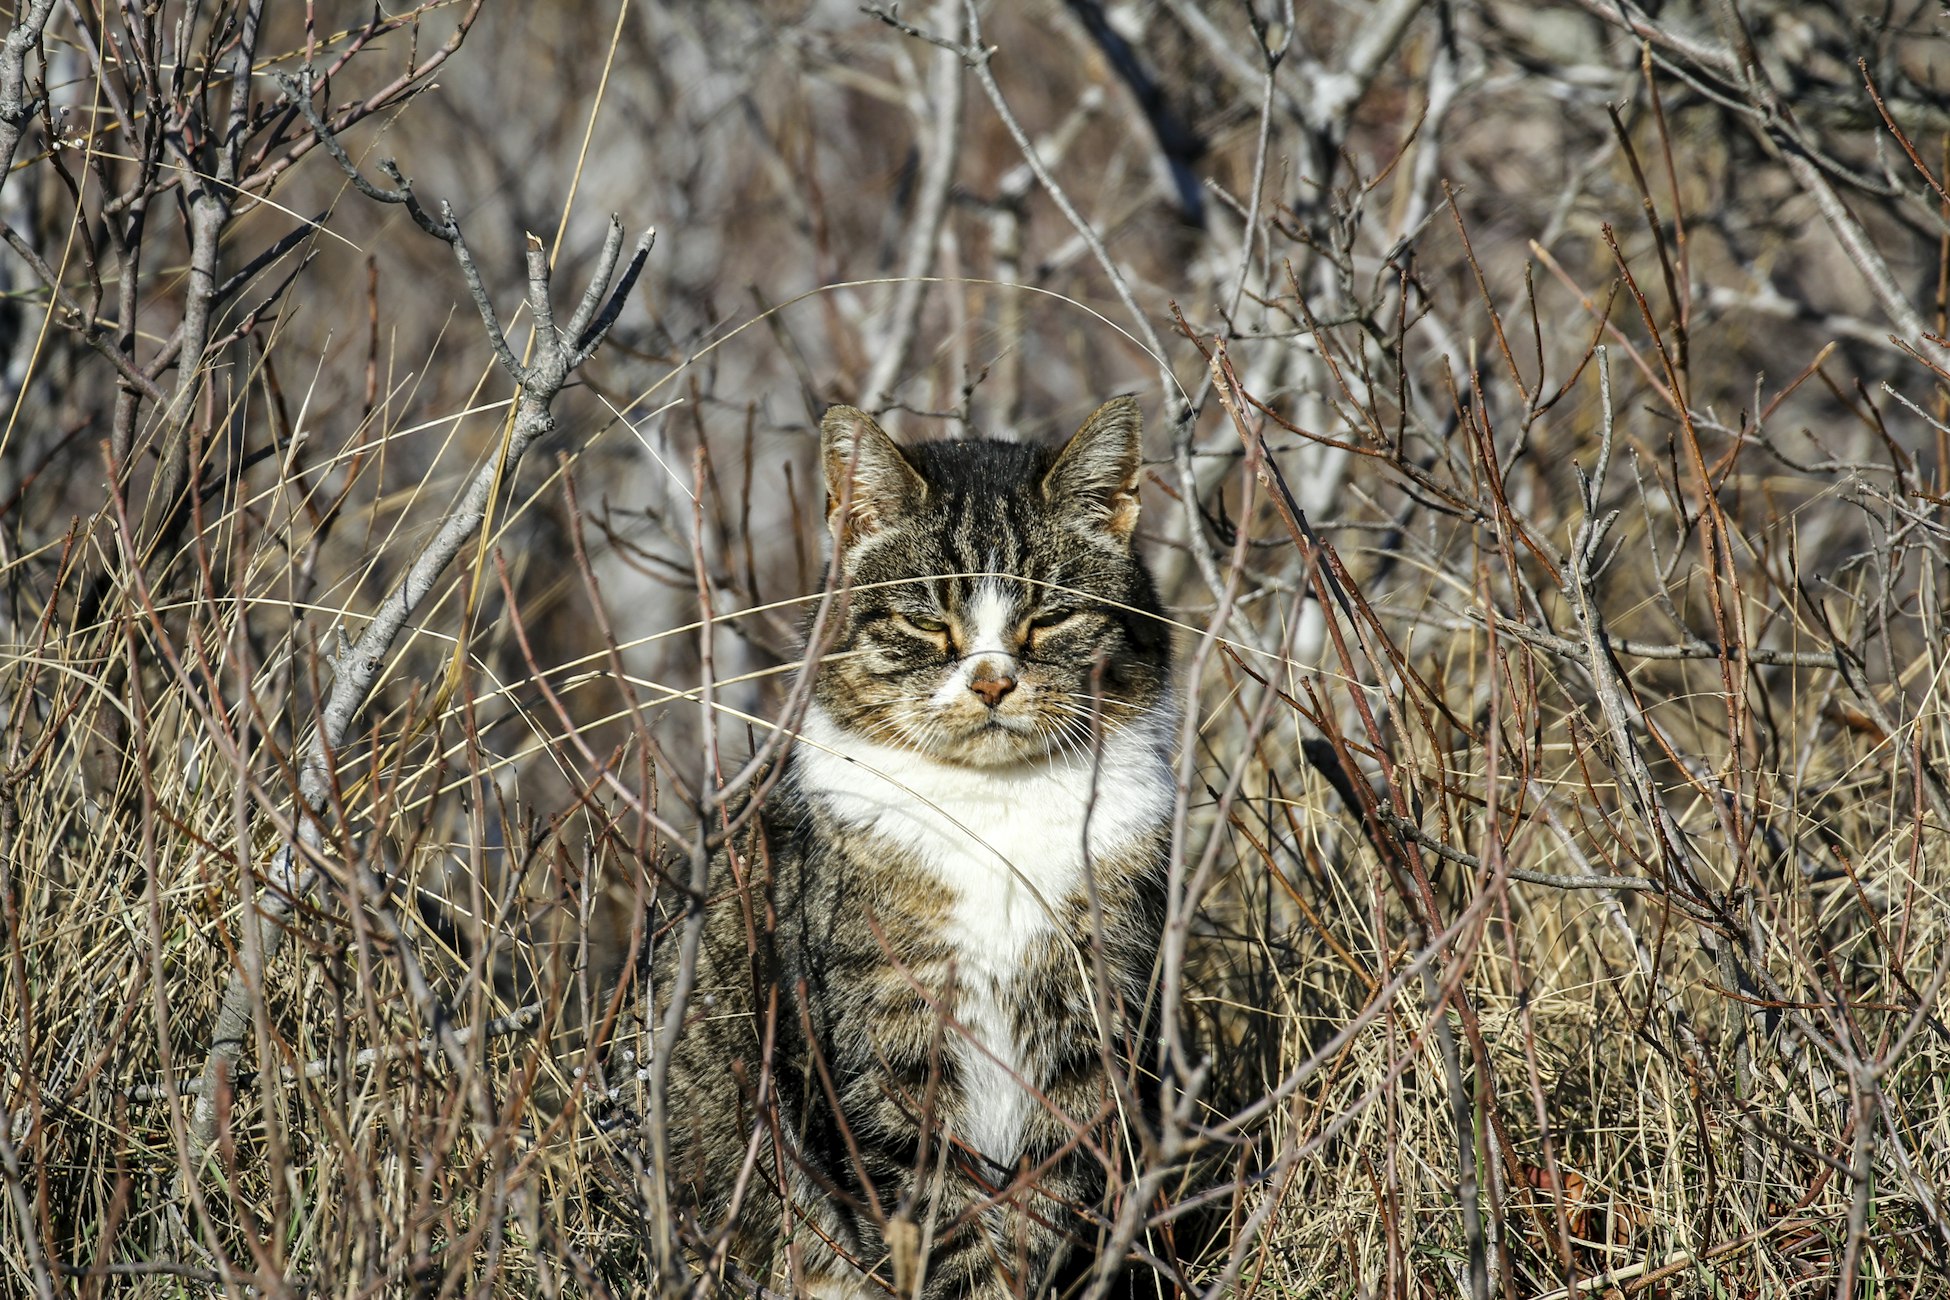 잎사귀가 없는 나뭇가지 덤불 사이에 앉아 있는 갈색 줄무늬 고양이